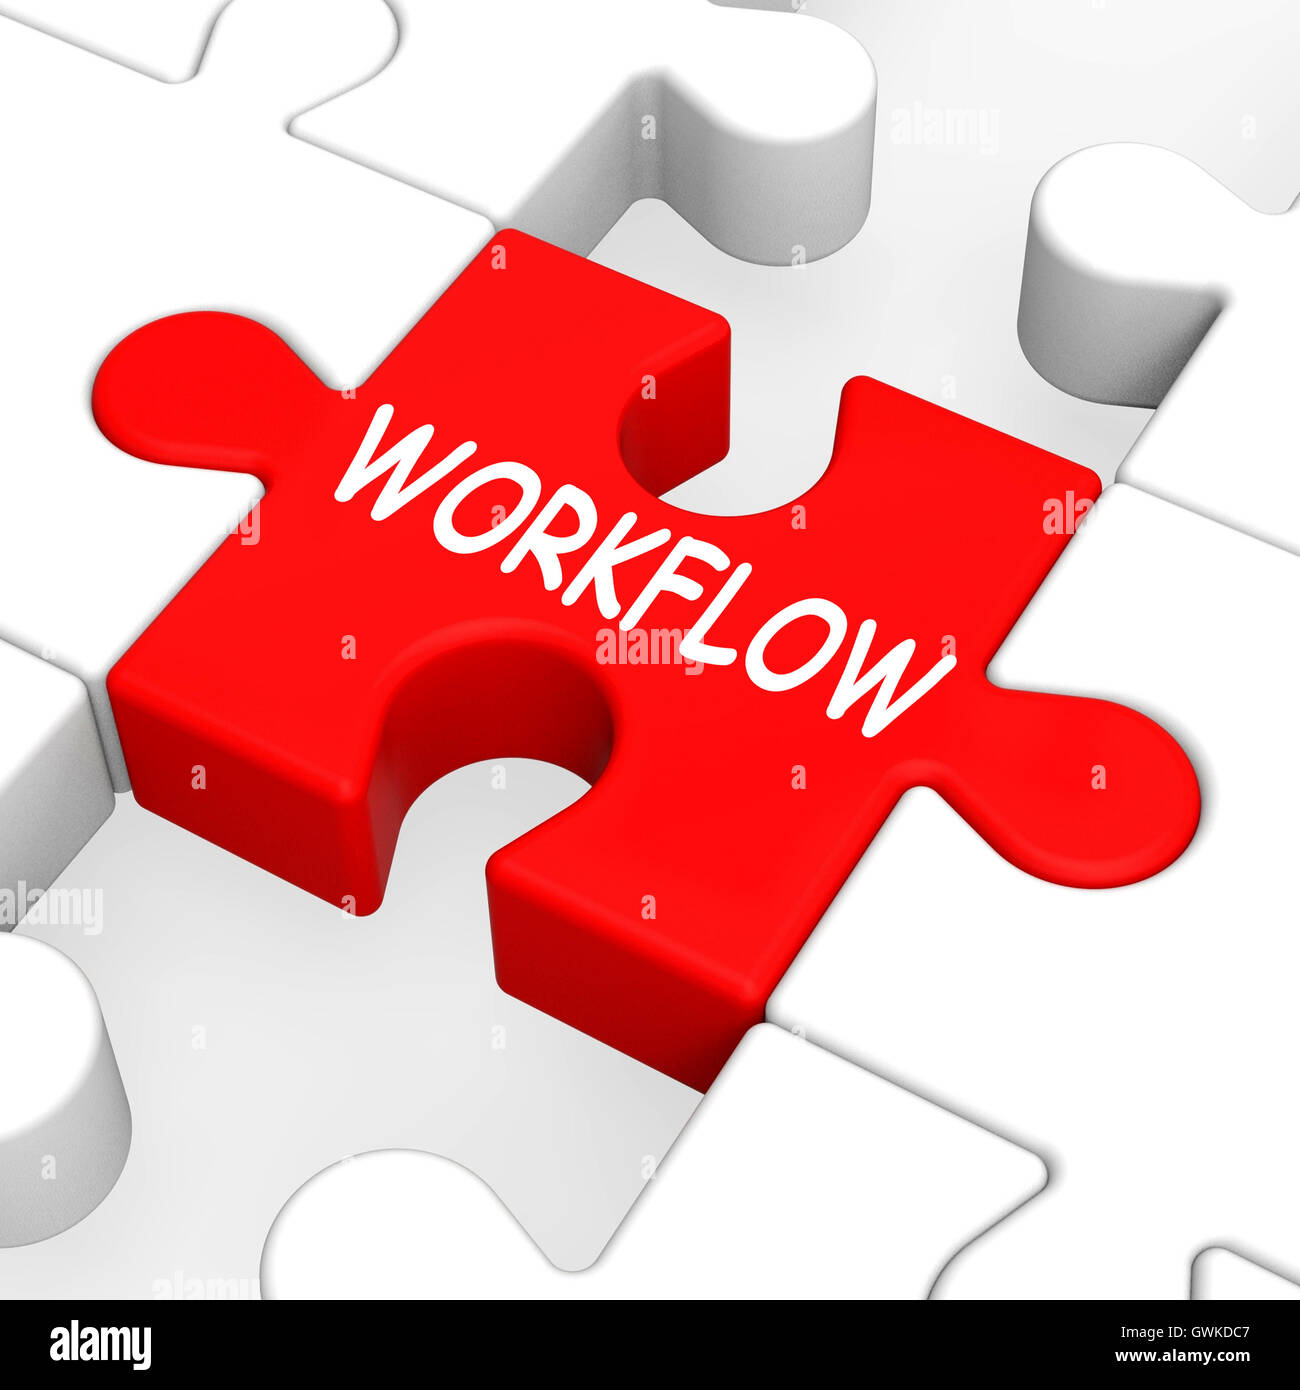 Workflow-Puzzle zeigt Prozessablauf oder Verfahren Stockfoto